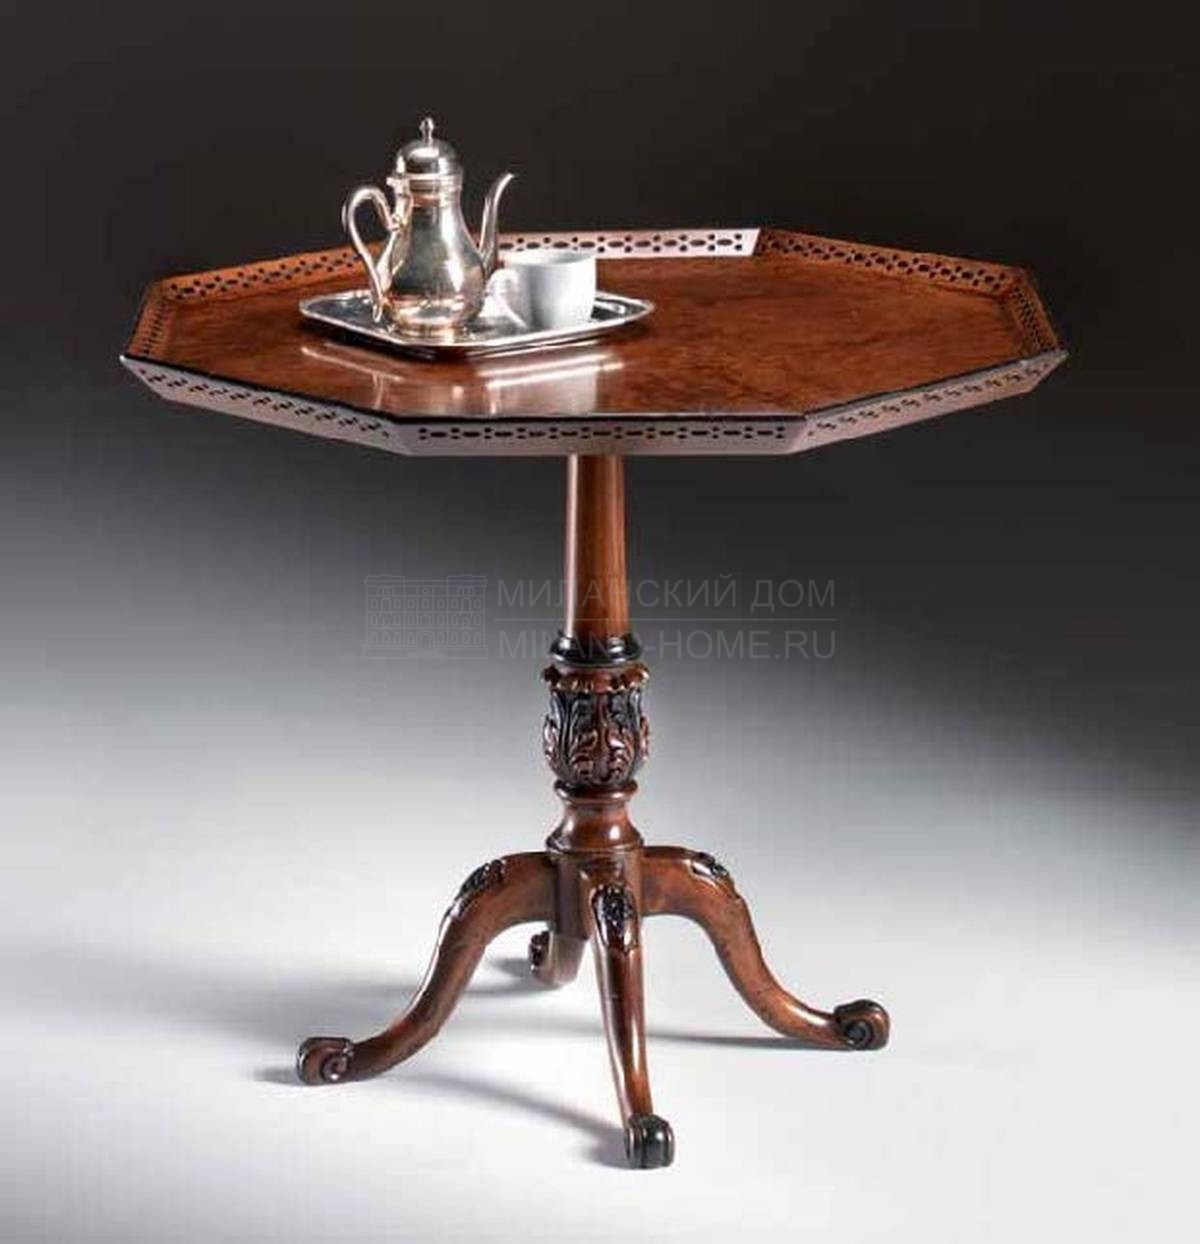 Кофейный столик Minion/21060.830 из Италии фабрики FRANCESCO MOLON